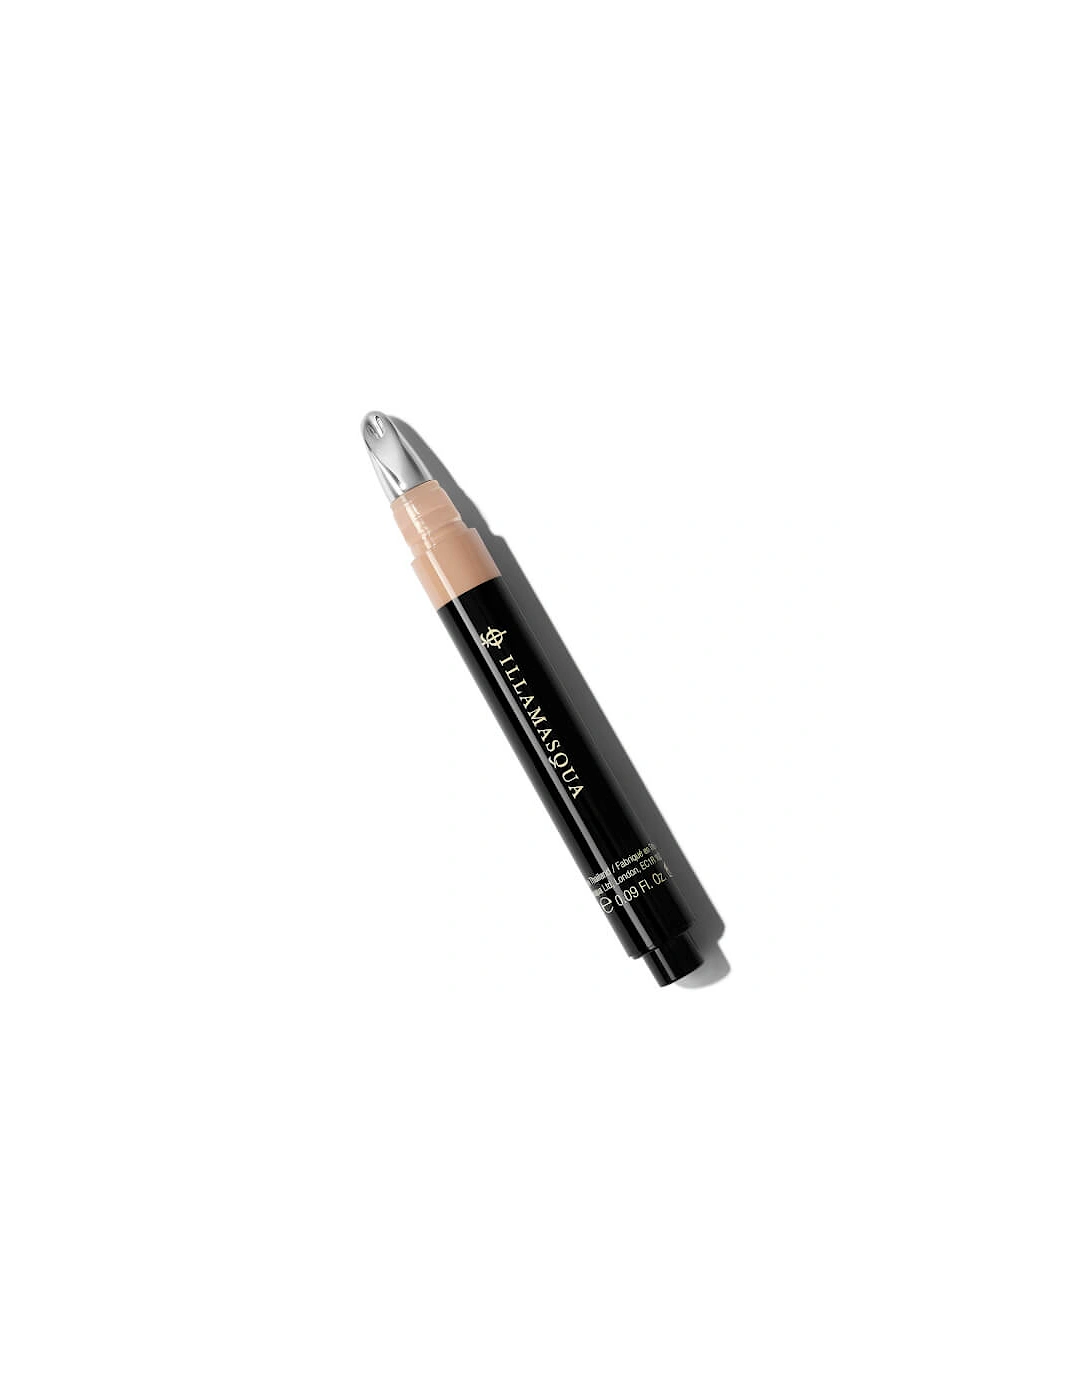 Skin Base Concealer Pen - Light 3, 2 of 1